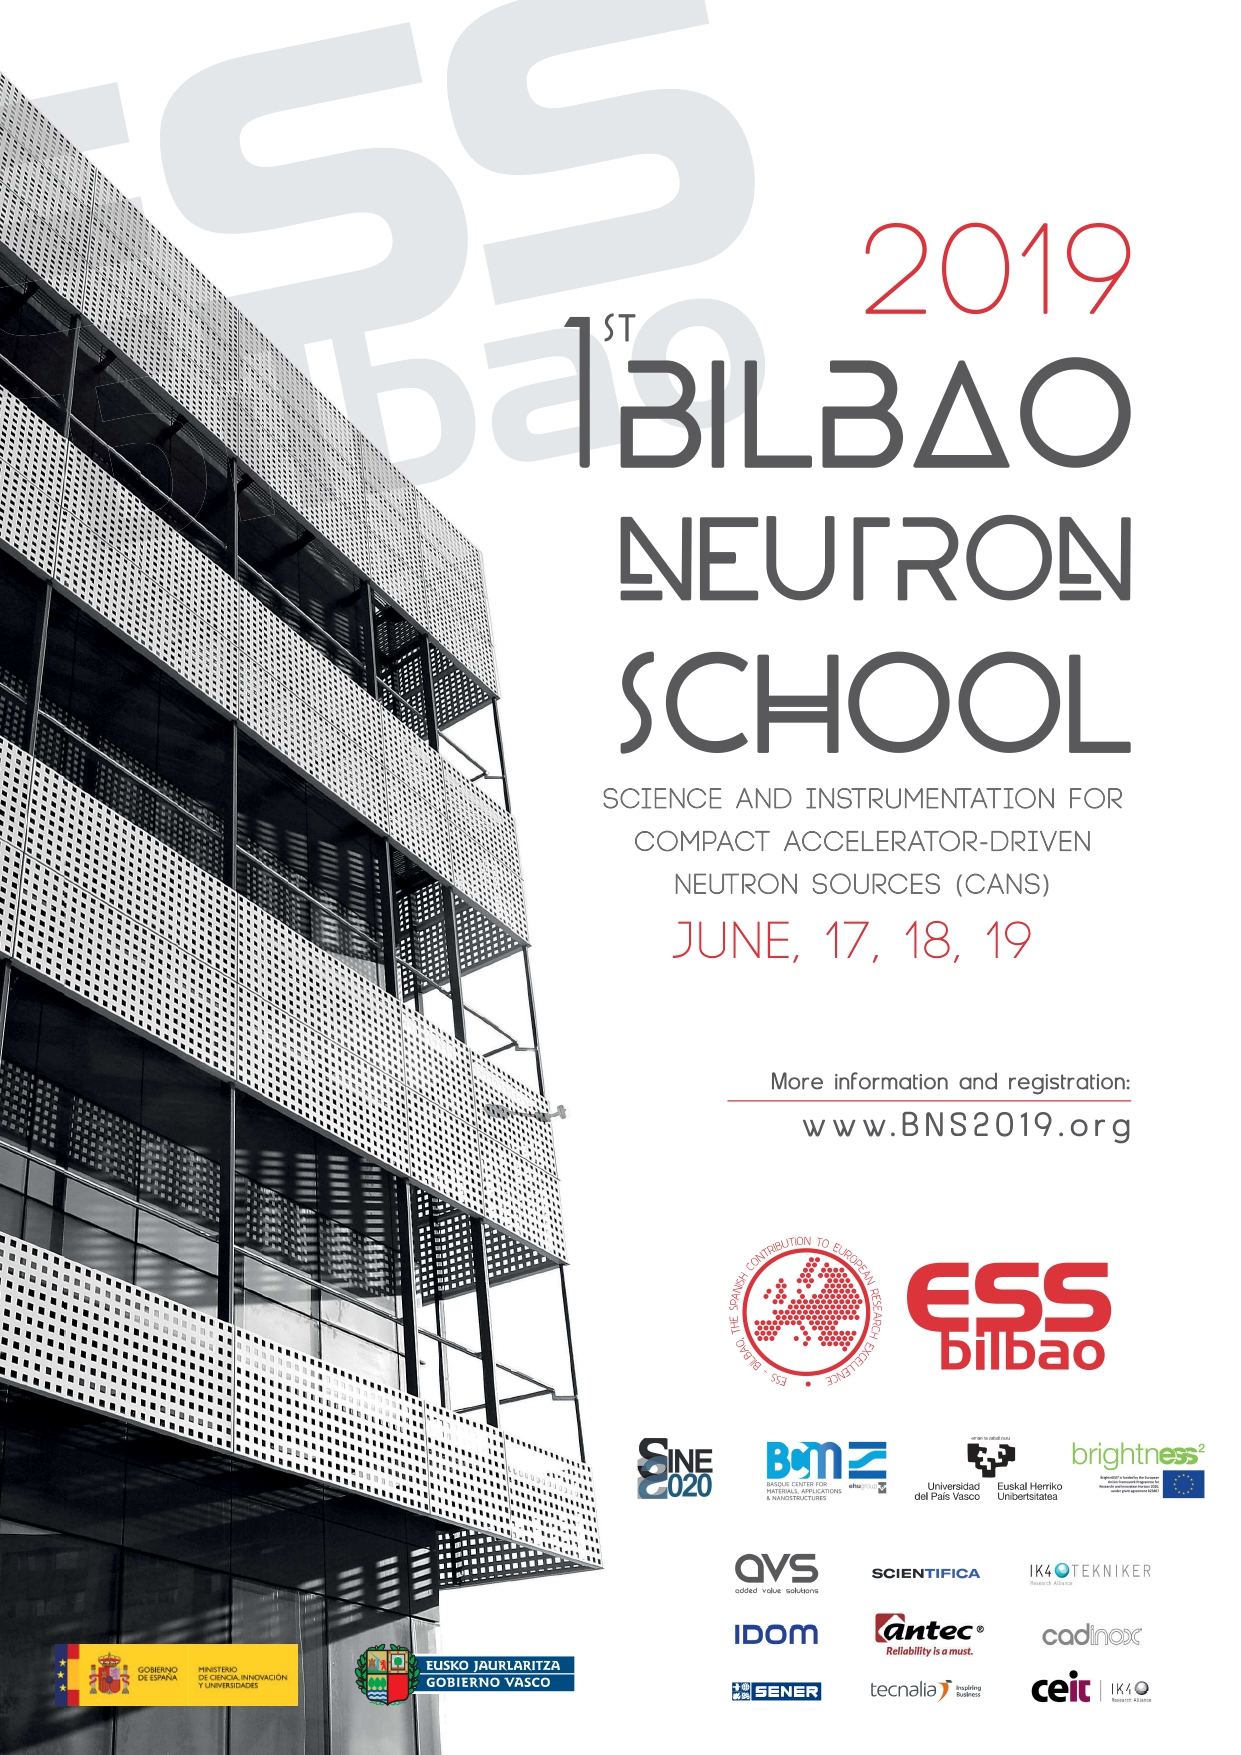 Bilbao Neutron School 2019